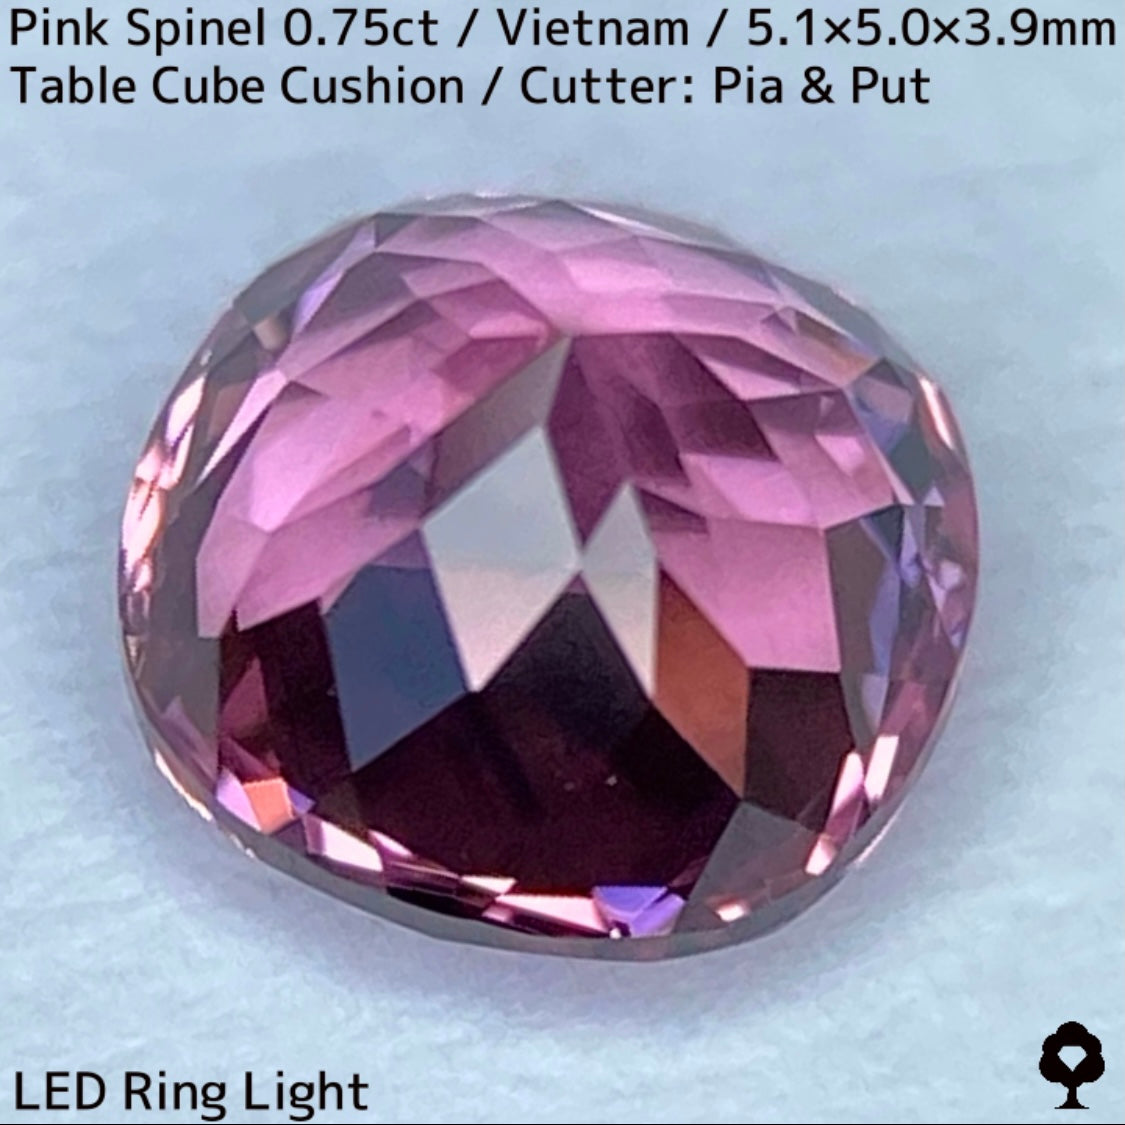 ベトナム産ピンクスピネル0.75ct★煌きが強すぎる花のような美パープリッシュピンクの美結晶